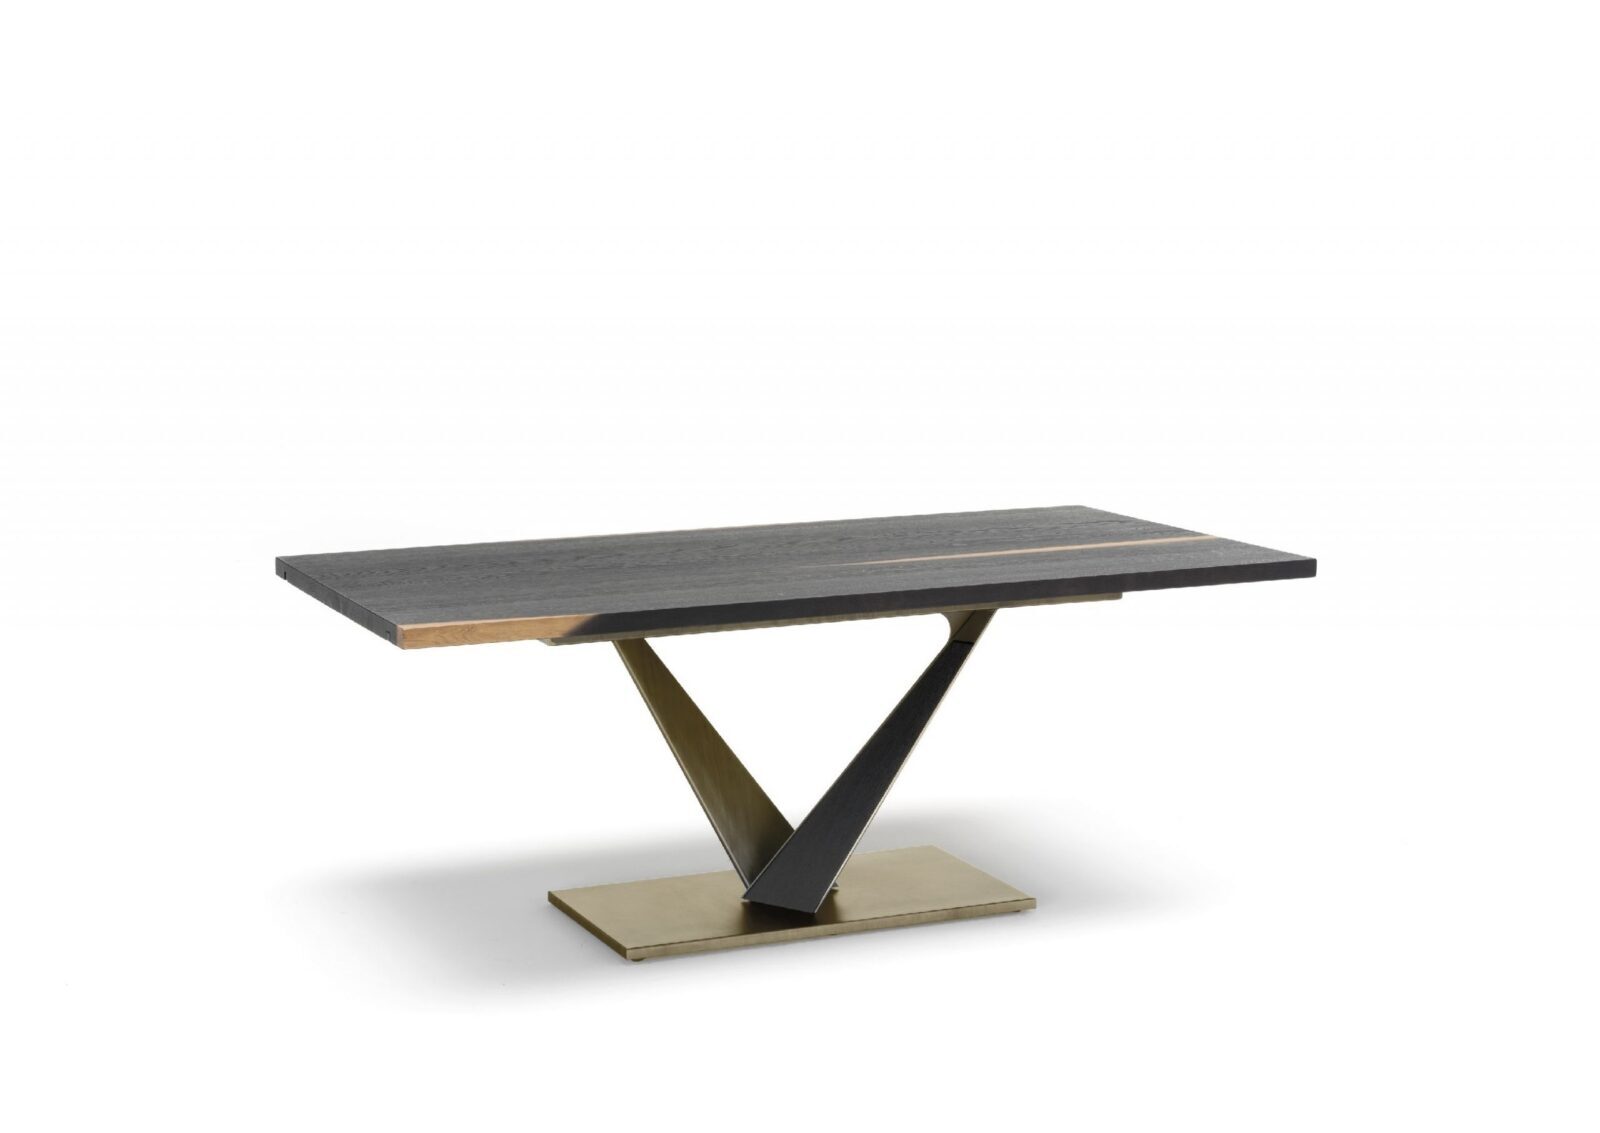 Table extensible Altacorte Tondo West - Tables extensibles